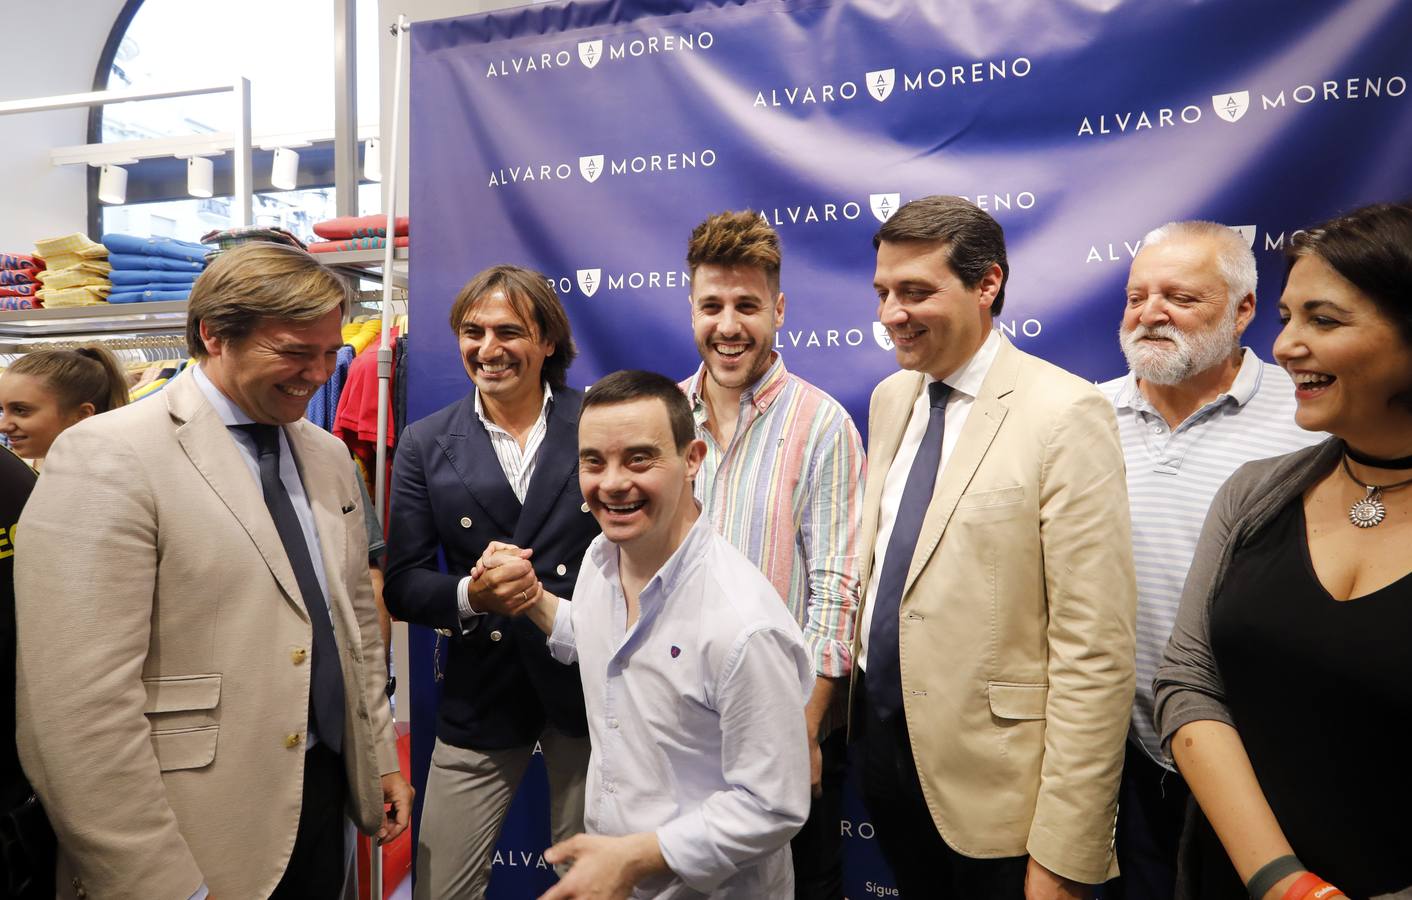 La apertura de la nueva tienda de Álvaro Moreno en Córdoba, en imágenes